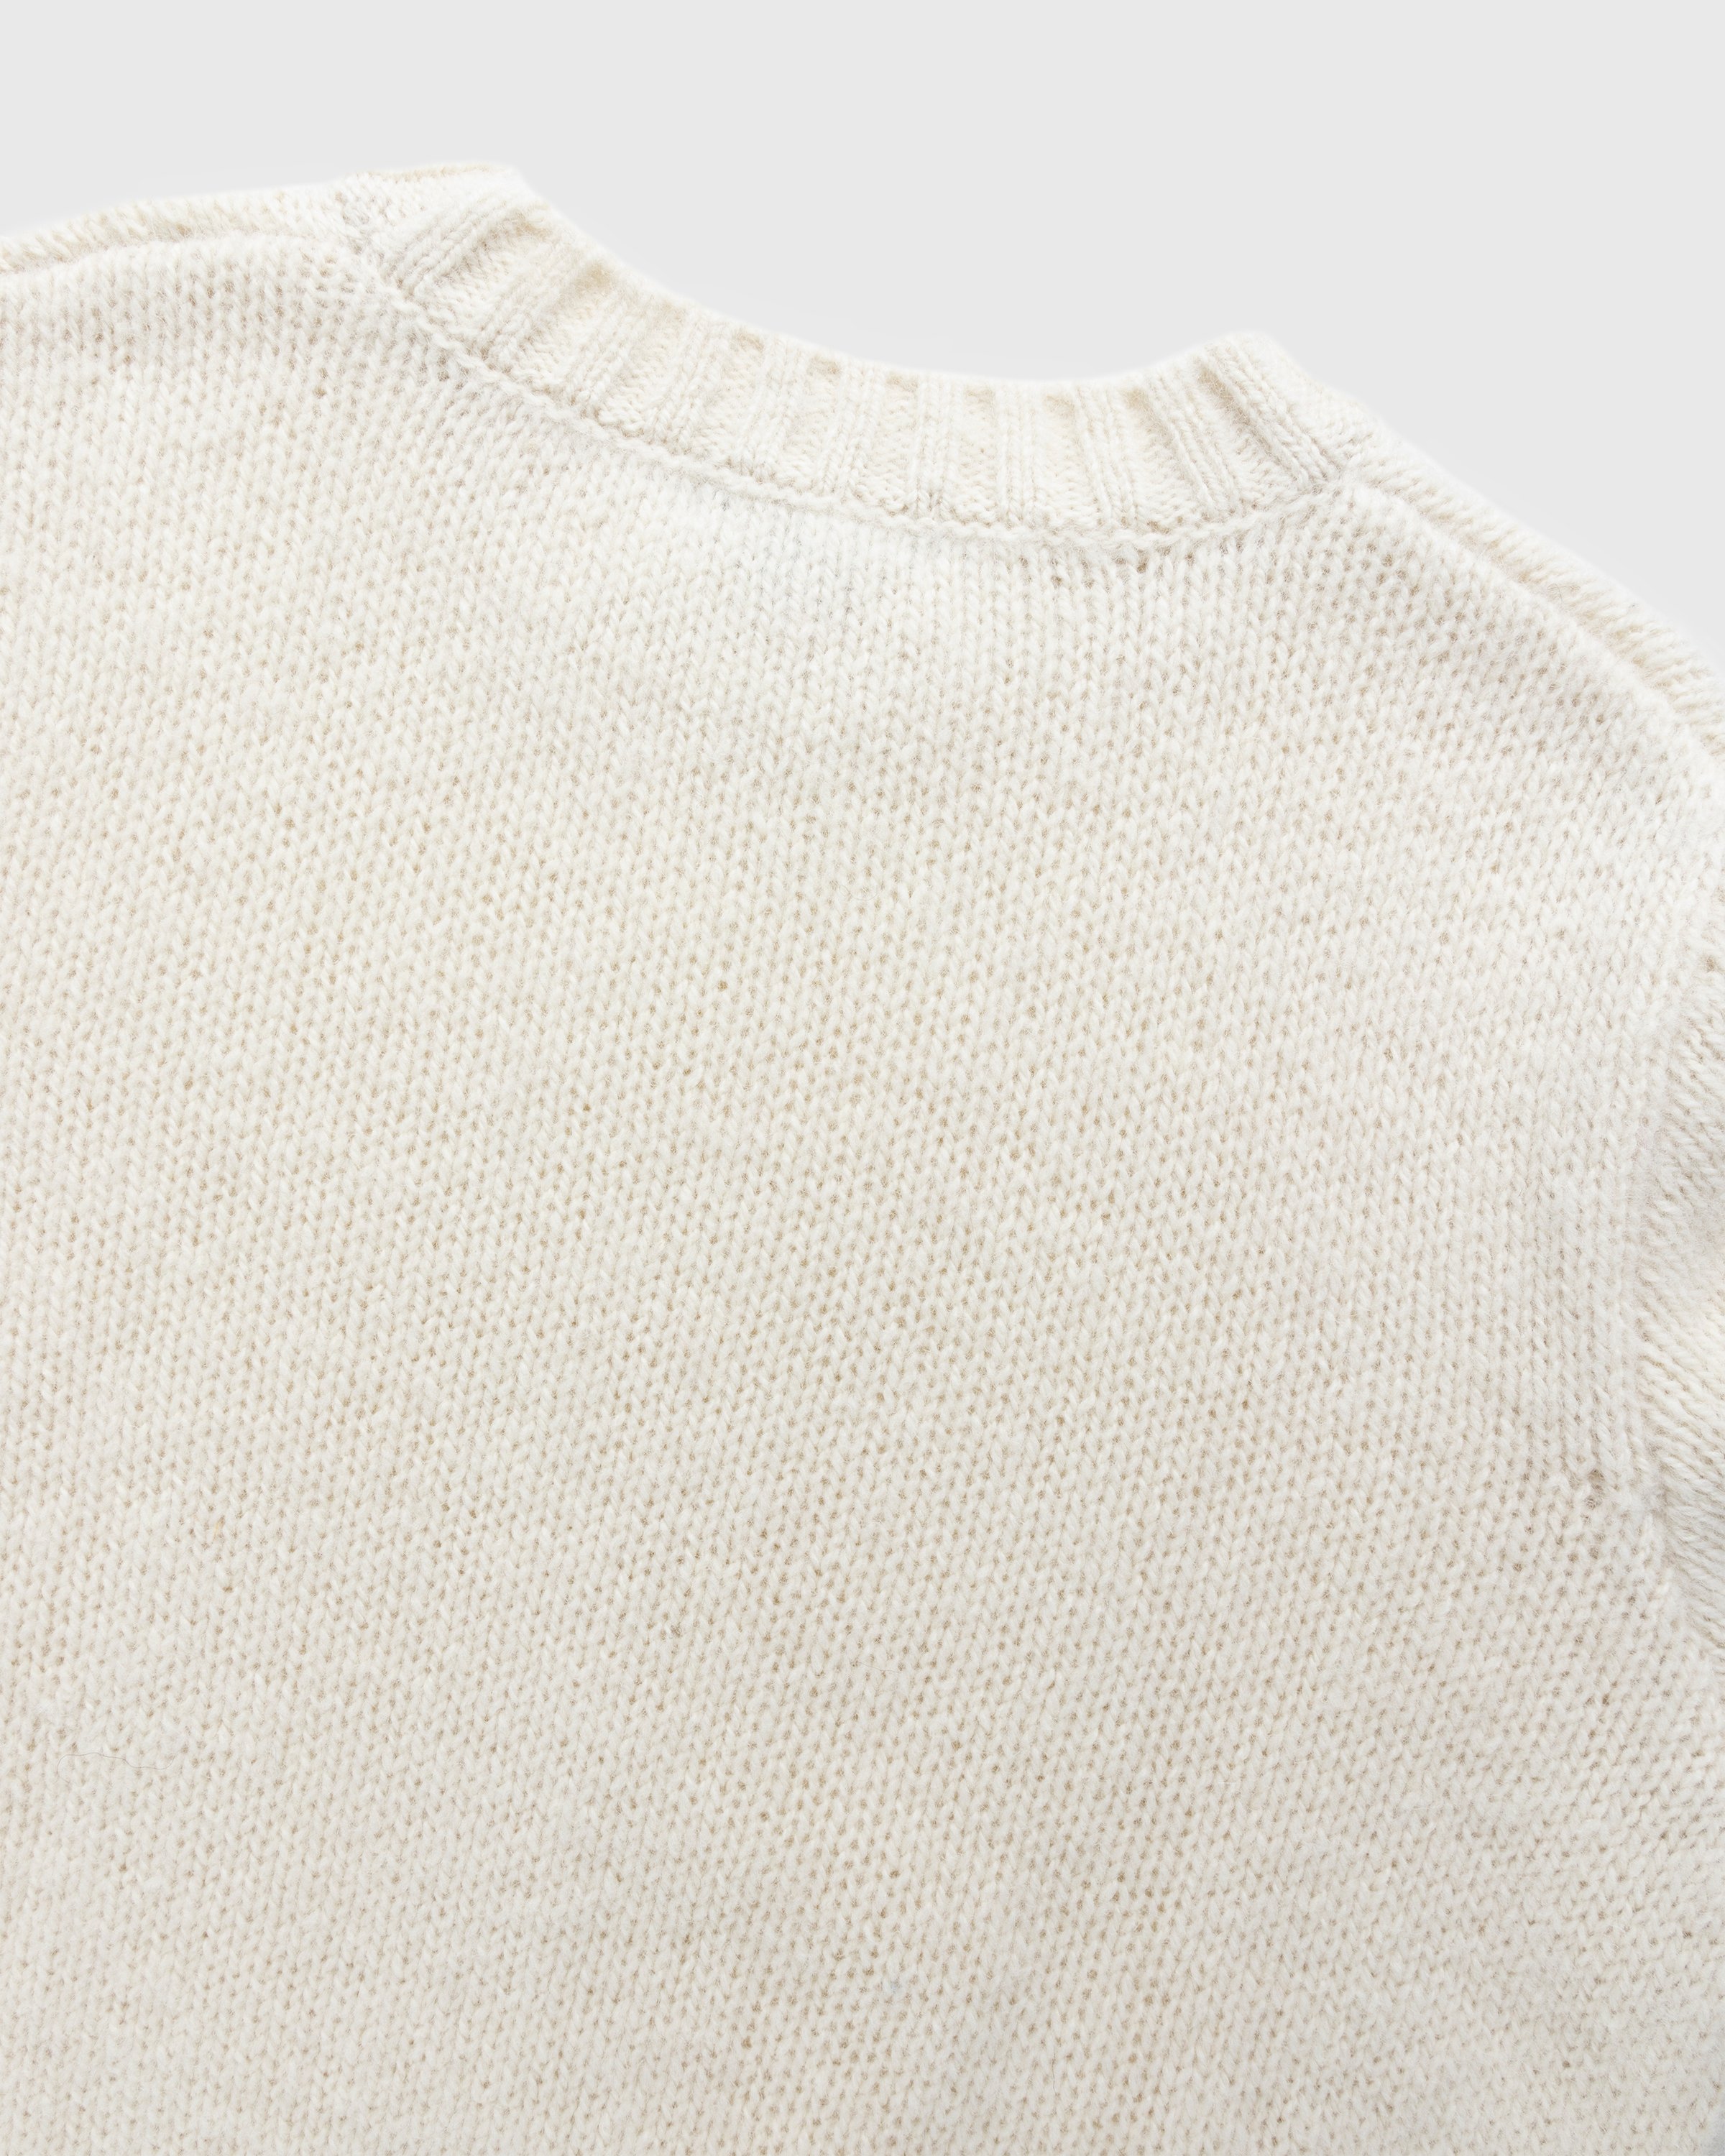 A.P.C. x Jean Touitou - Jim Sweater Off White - Clothing - Offwhite - Image 4